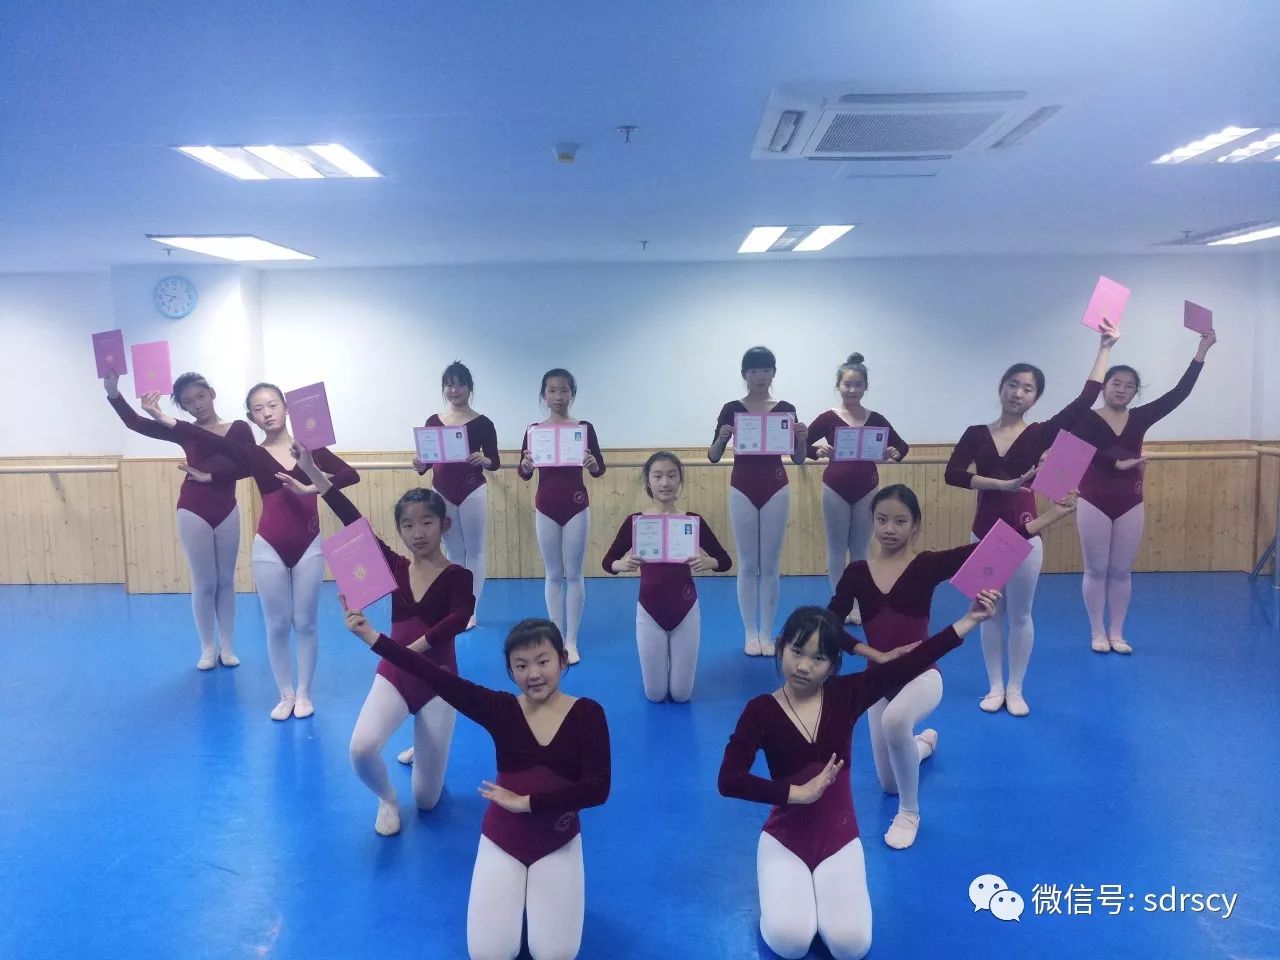 【润笙动态】走进春芽舞蹈课堂——北京舞蹈学院中国